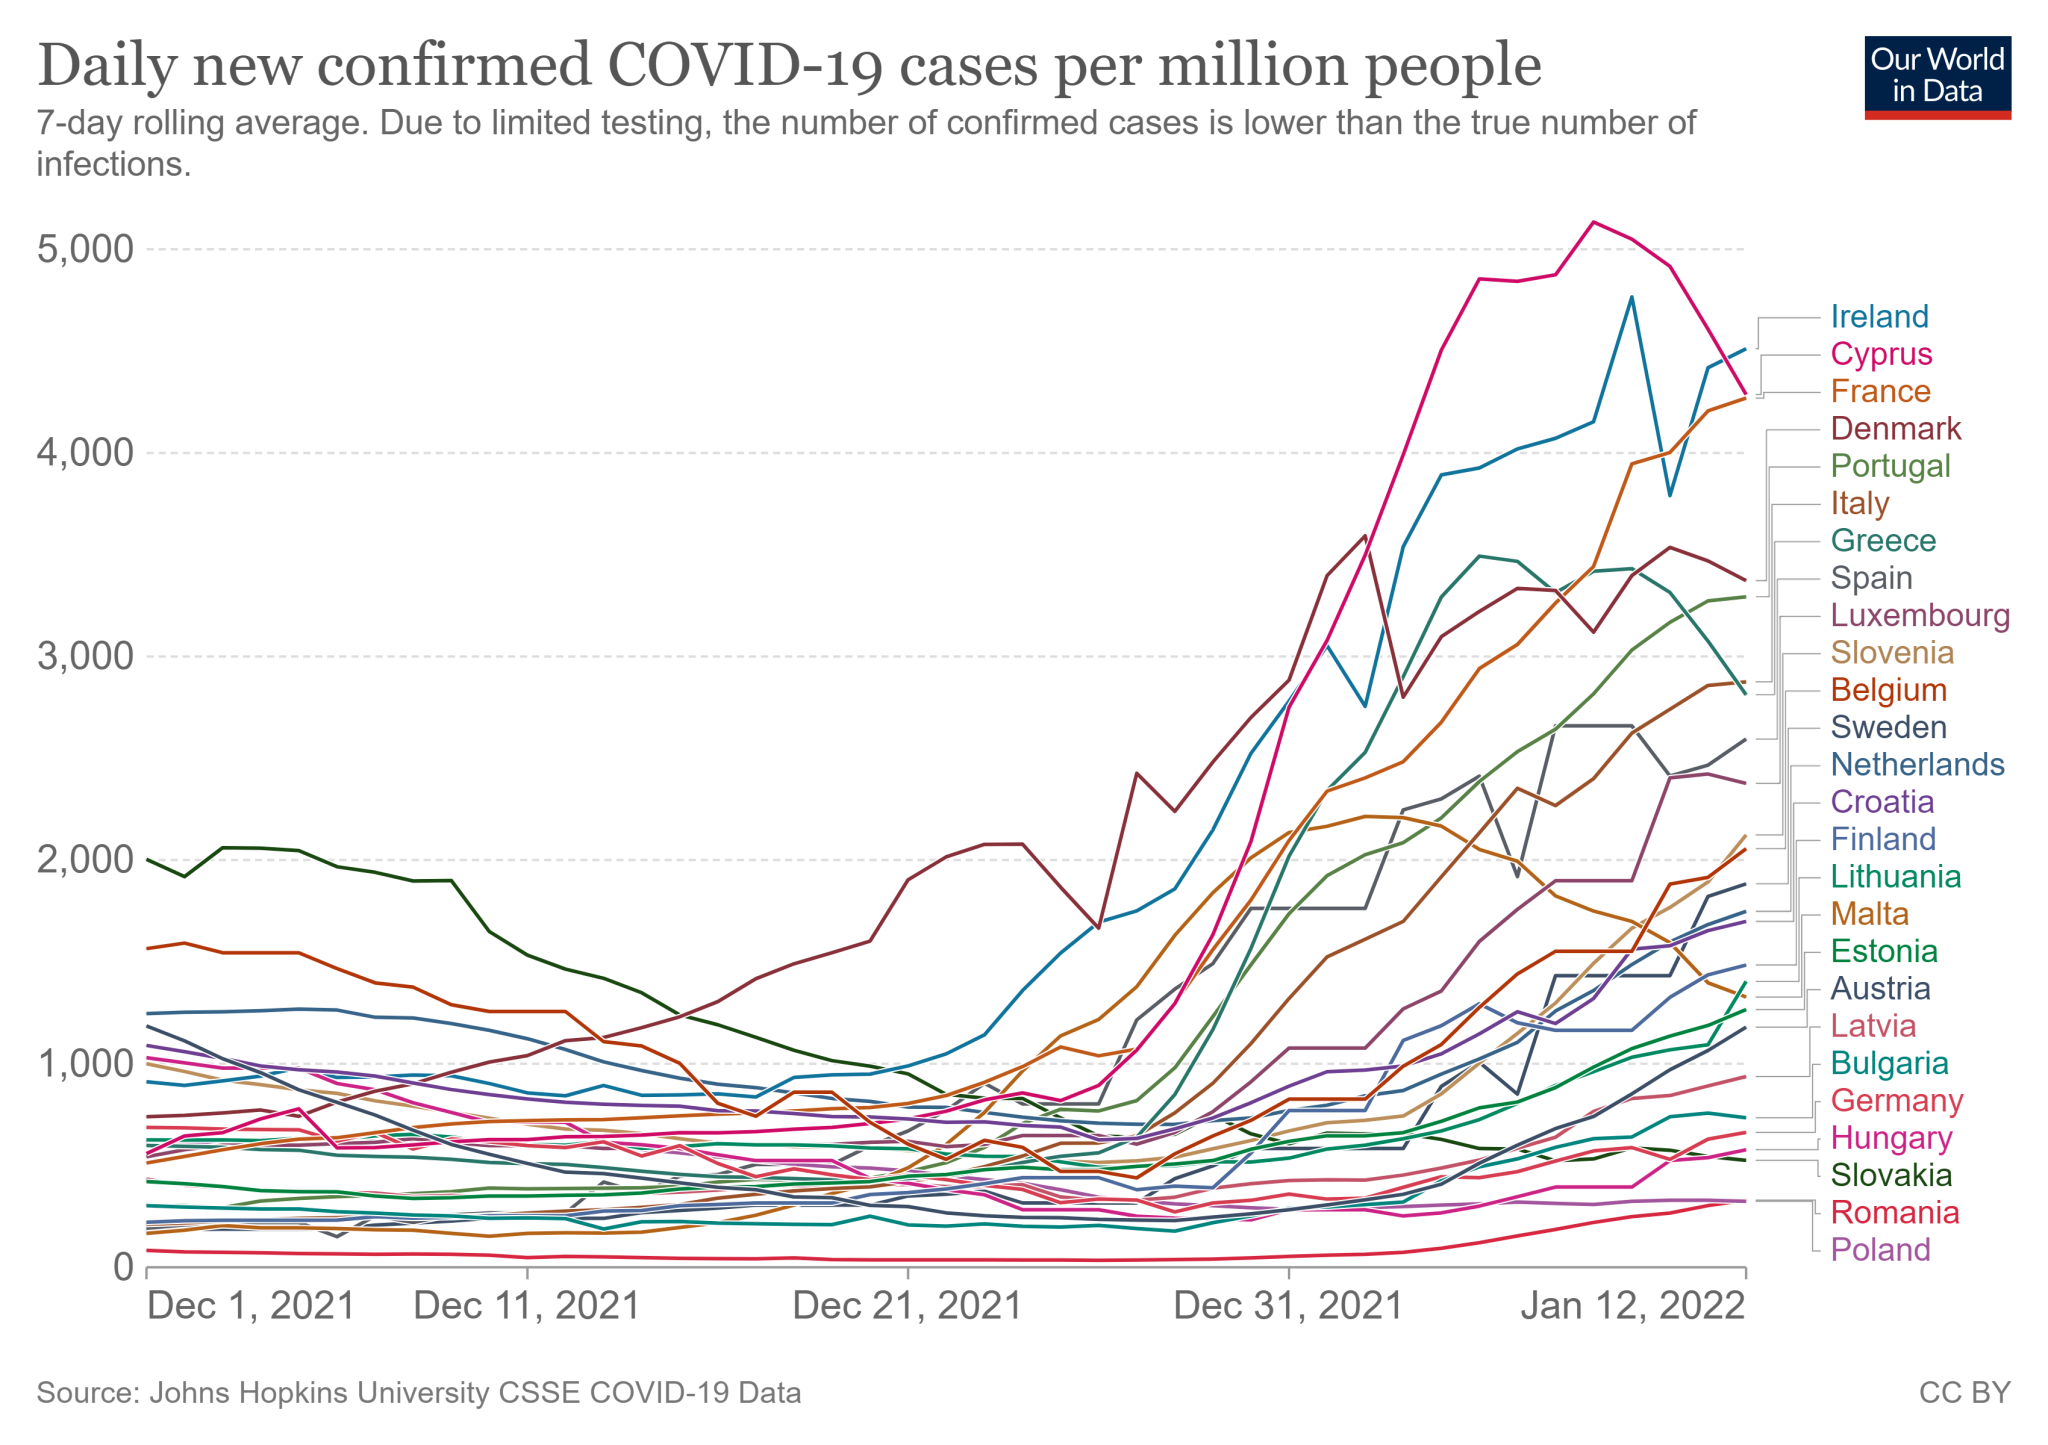 Średnia tygodniowa liczba zakażeń COVID-19 na milion mieszkańców w krajach Unii Europejskiej (od 1 grudnia 2021 do 12 stycznia 2022)